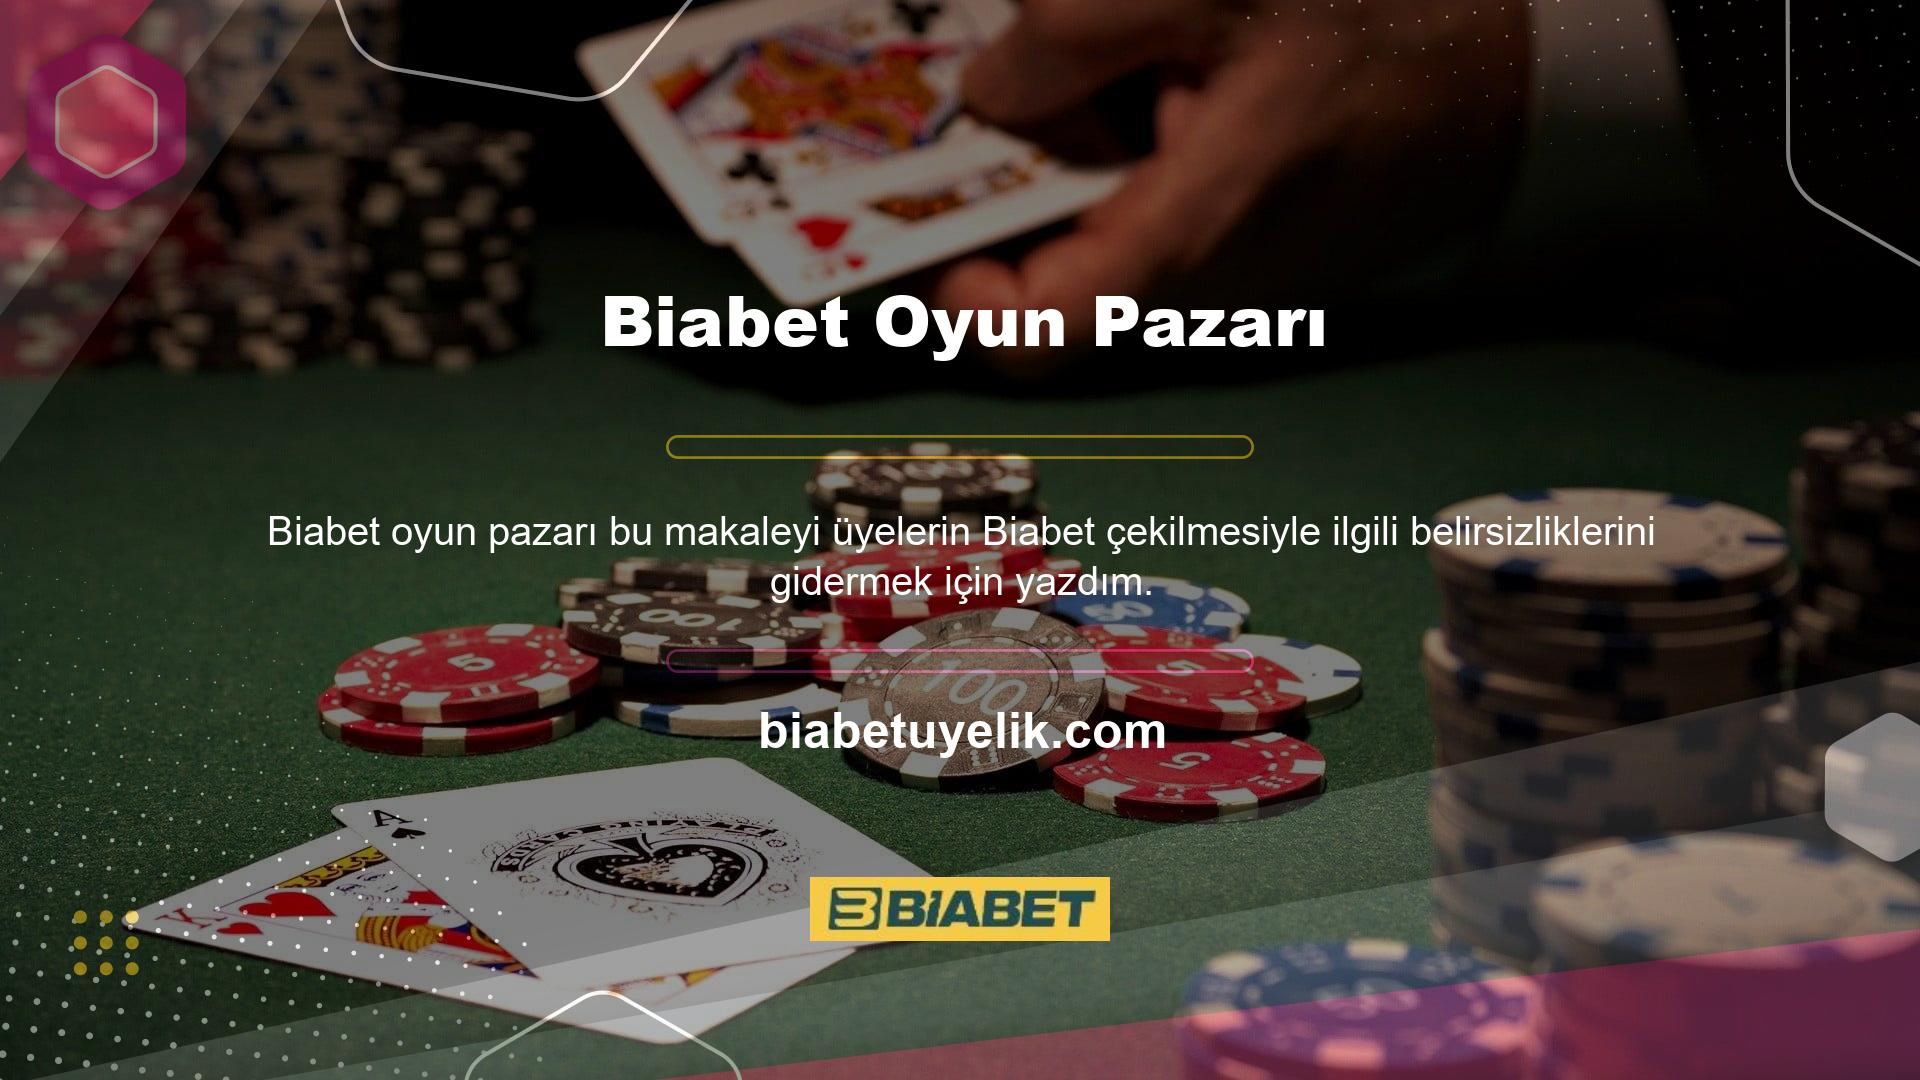 Popüler inanışın aksine Biabet casino sitesinin çoğu kullanıcı tarafından ücretsiz olduğuna inanılmaktadır